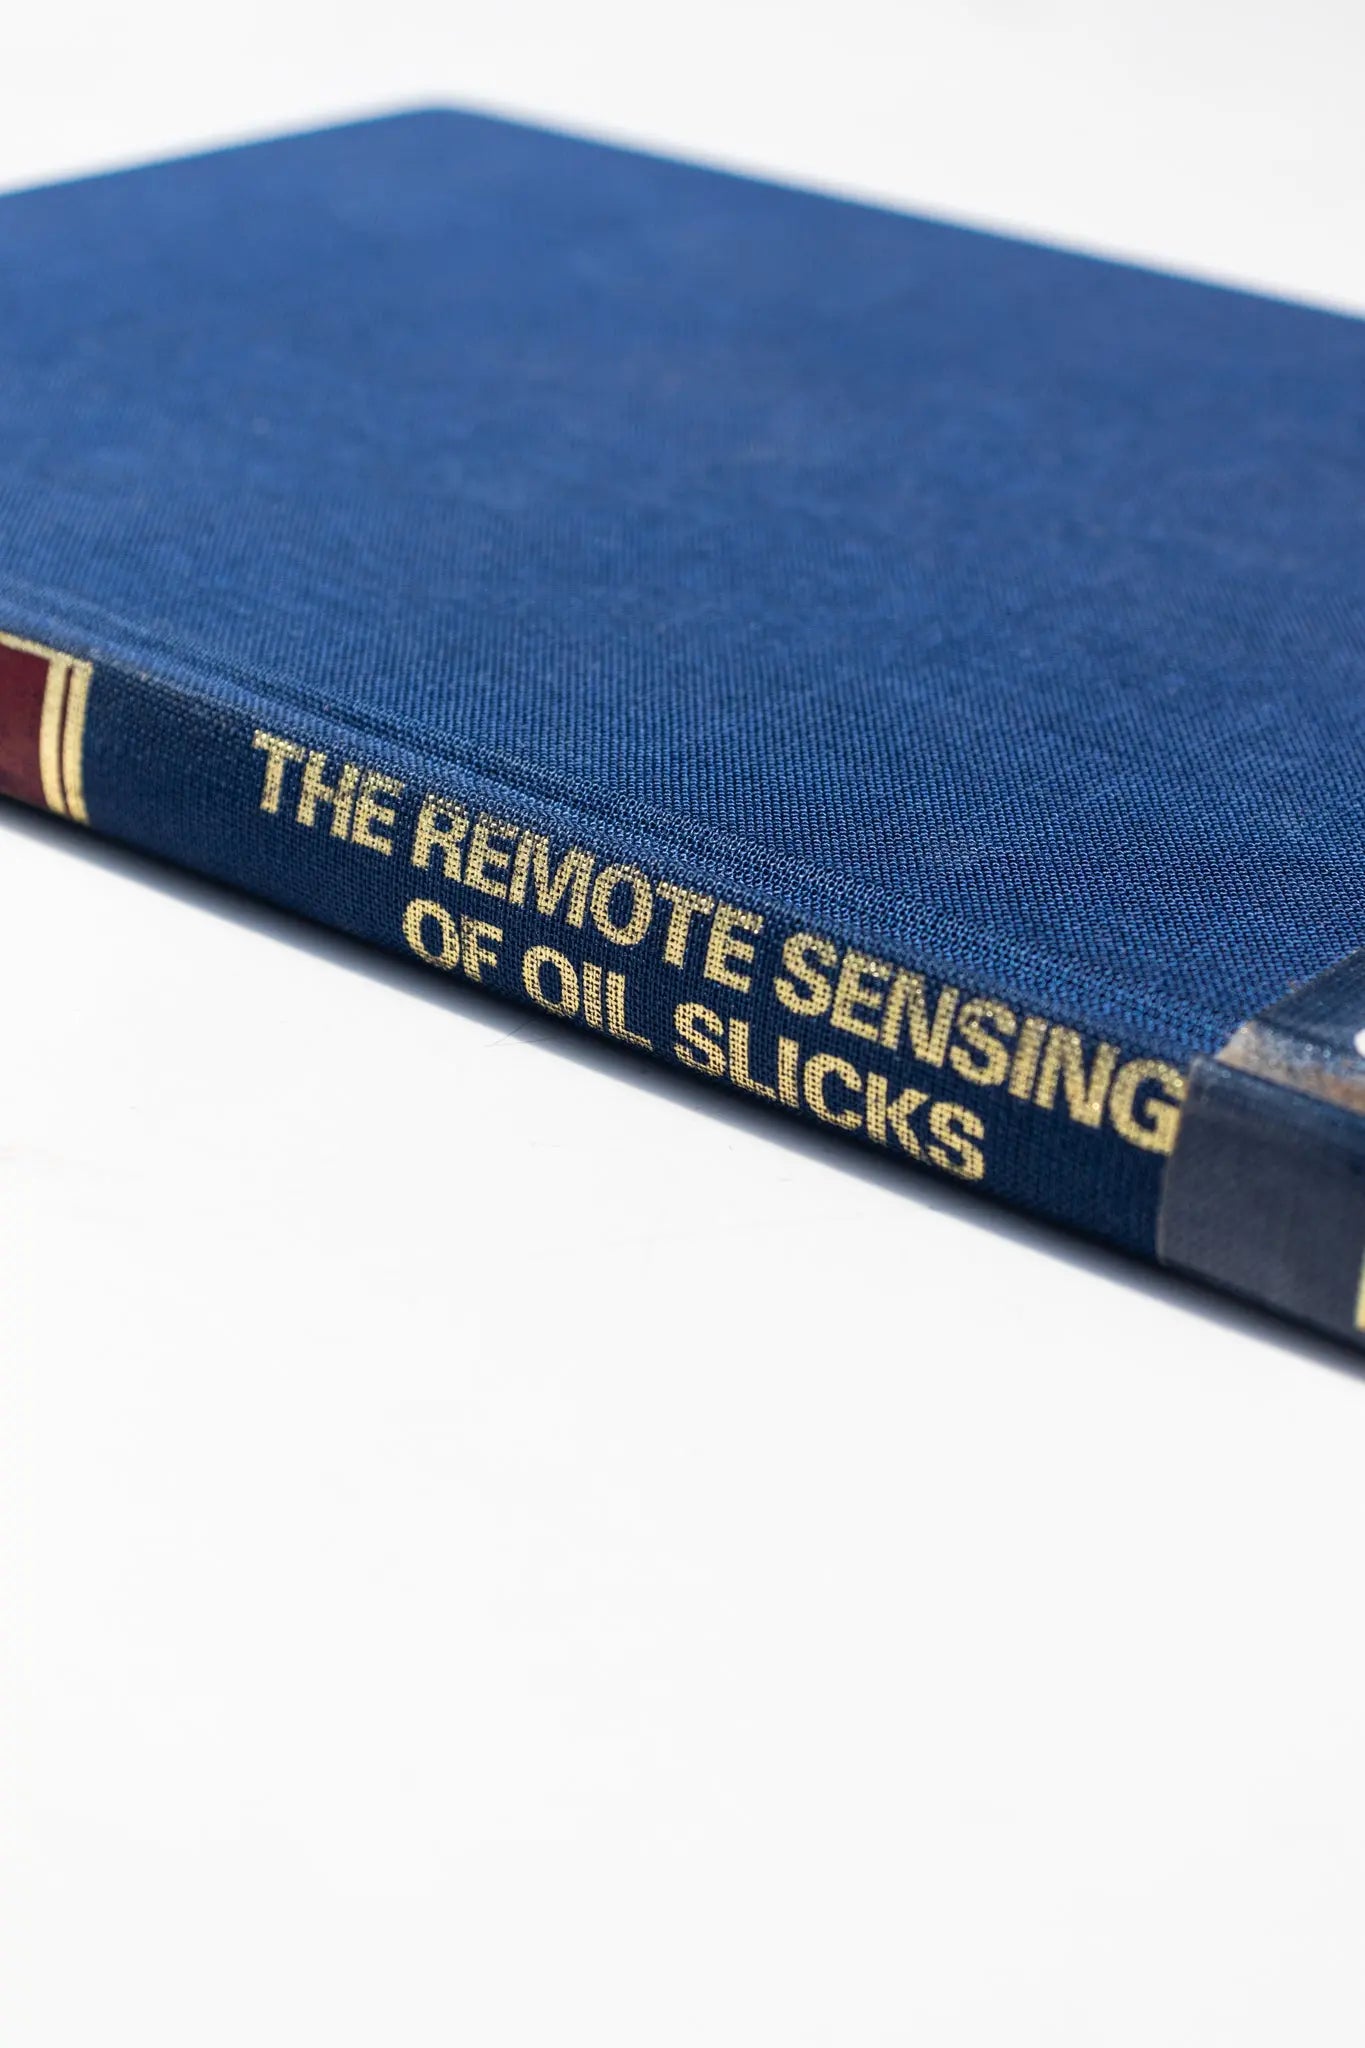 The Remote Sensing of Oil Slicks